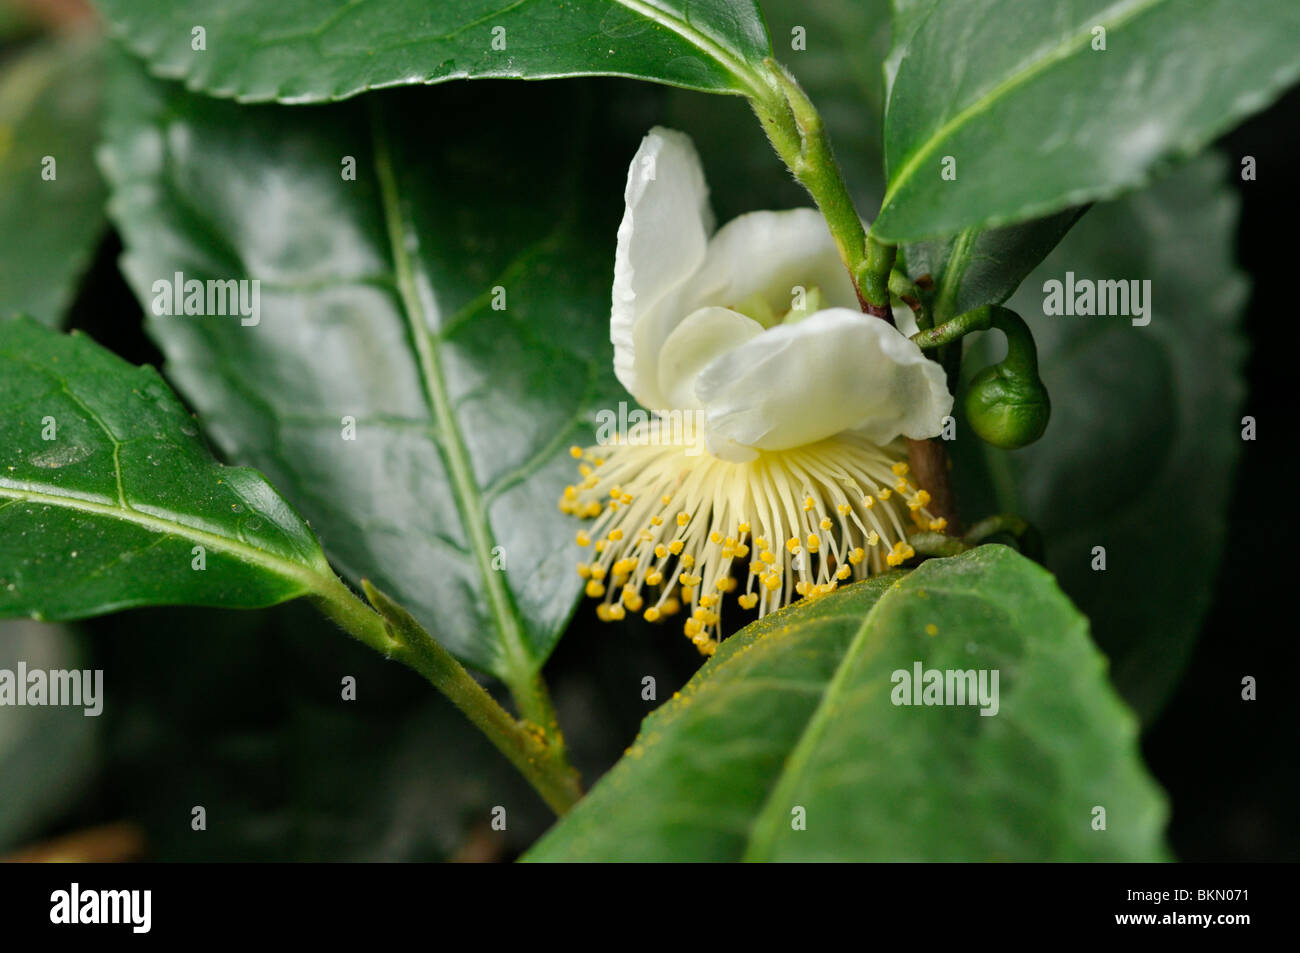 Tea plant (Camellia sinensis) Stock Photo